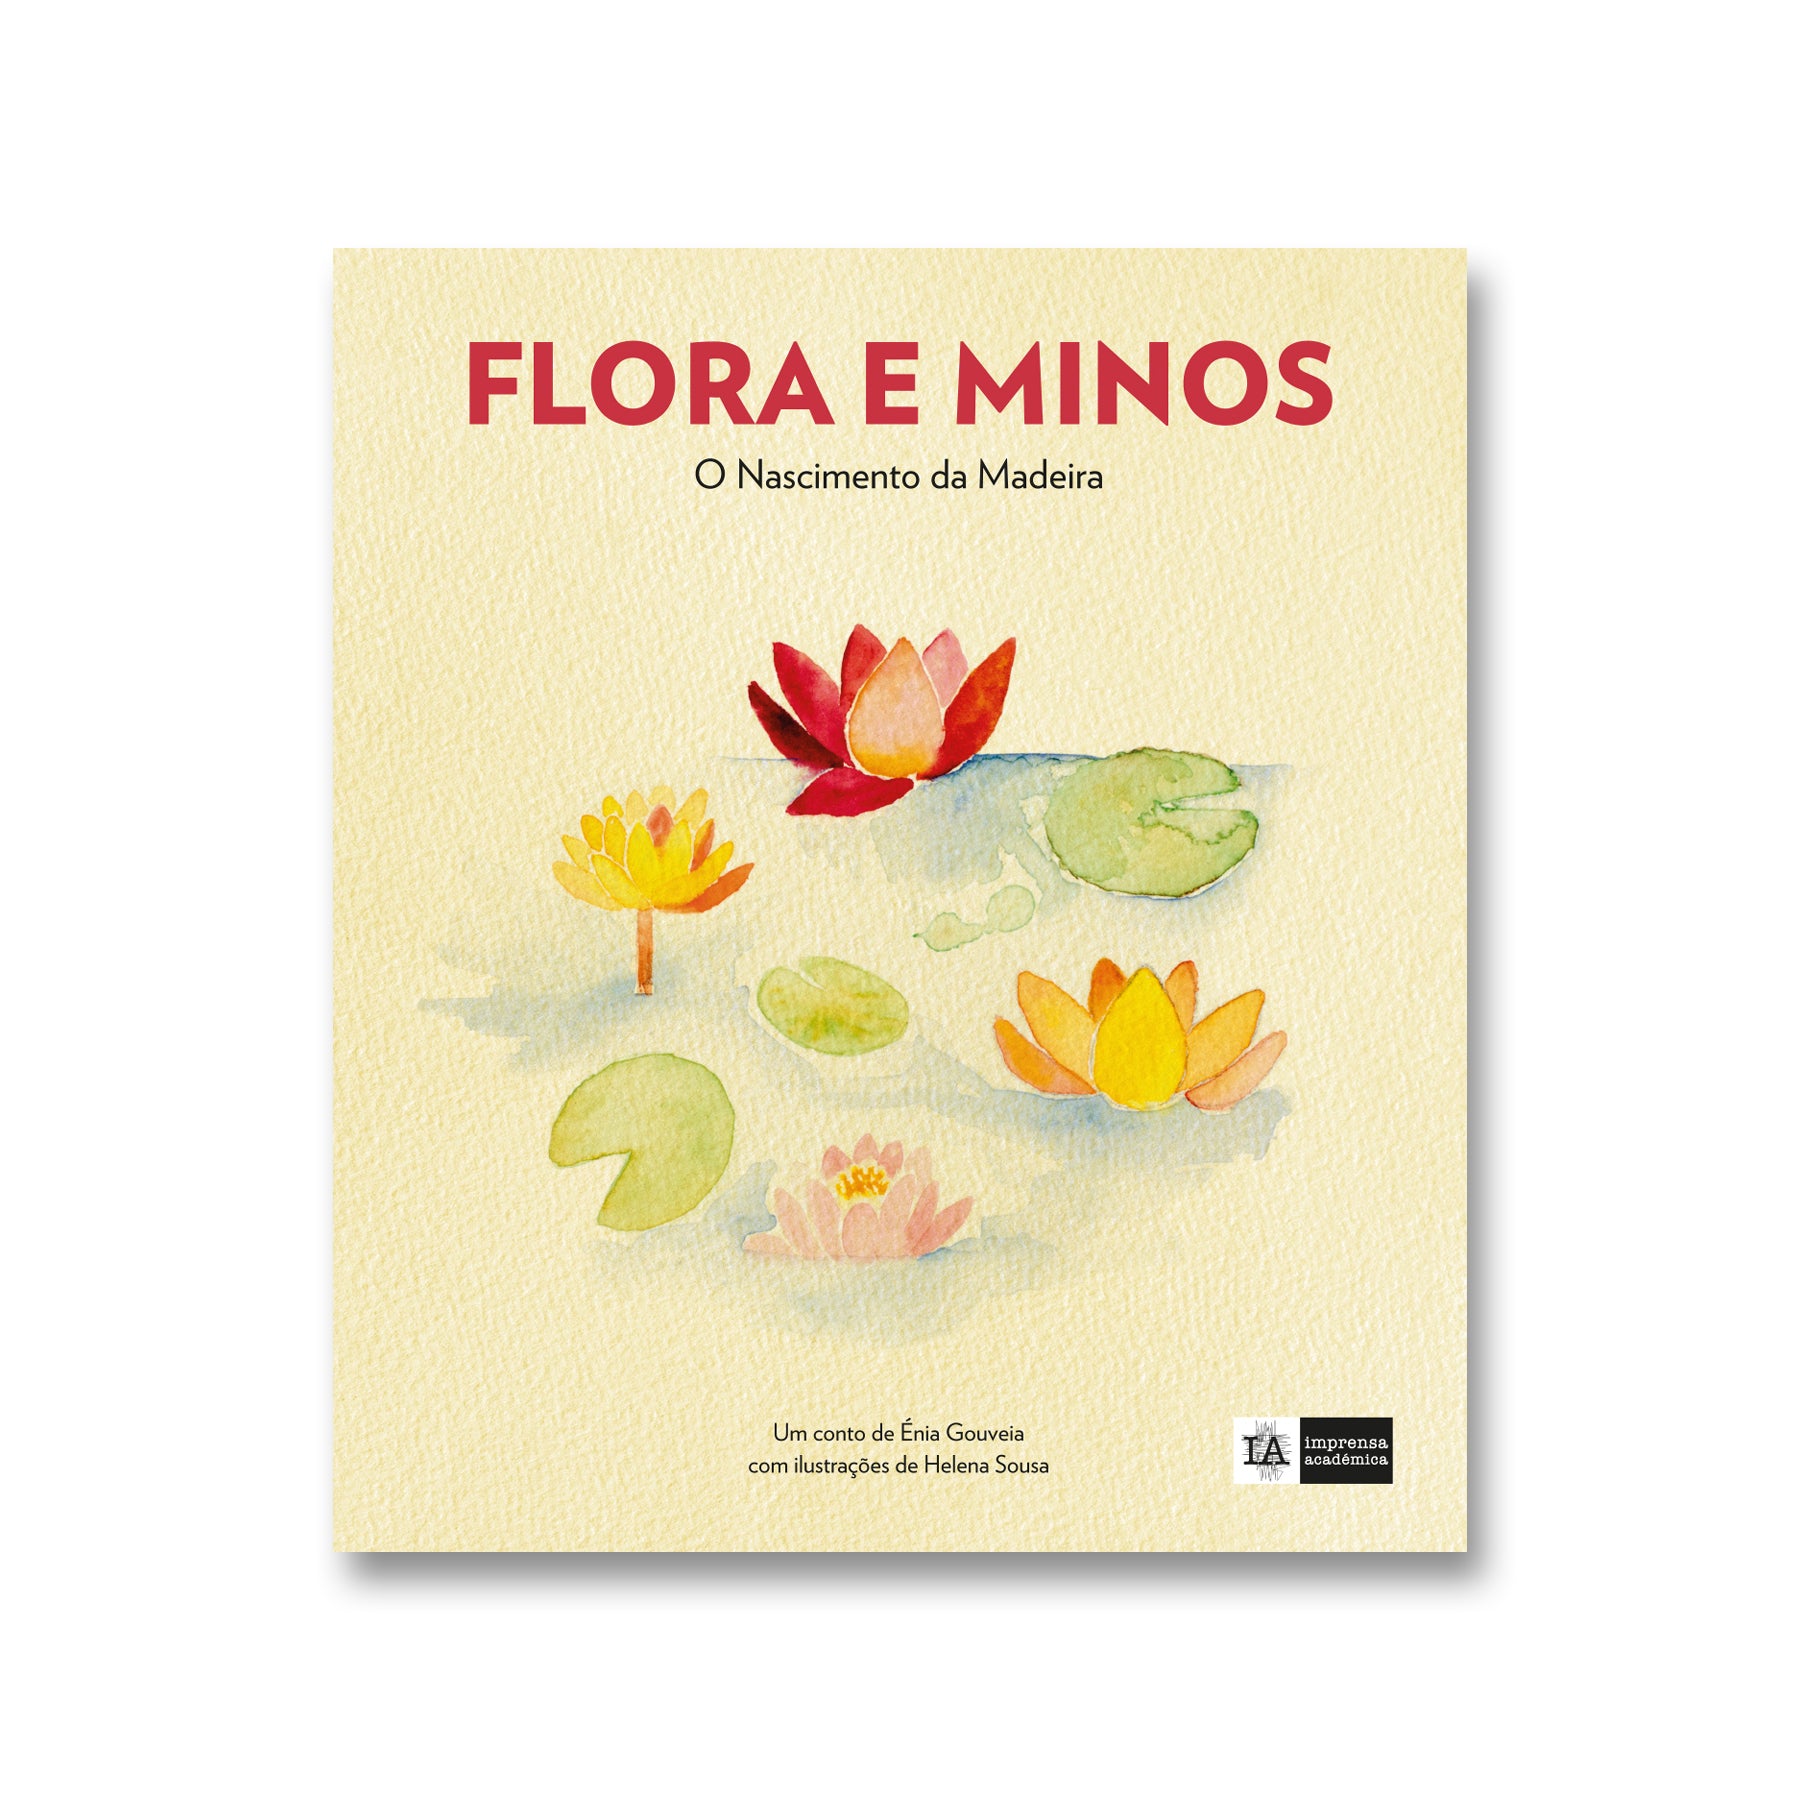 Flora e Minos